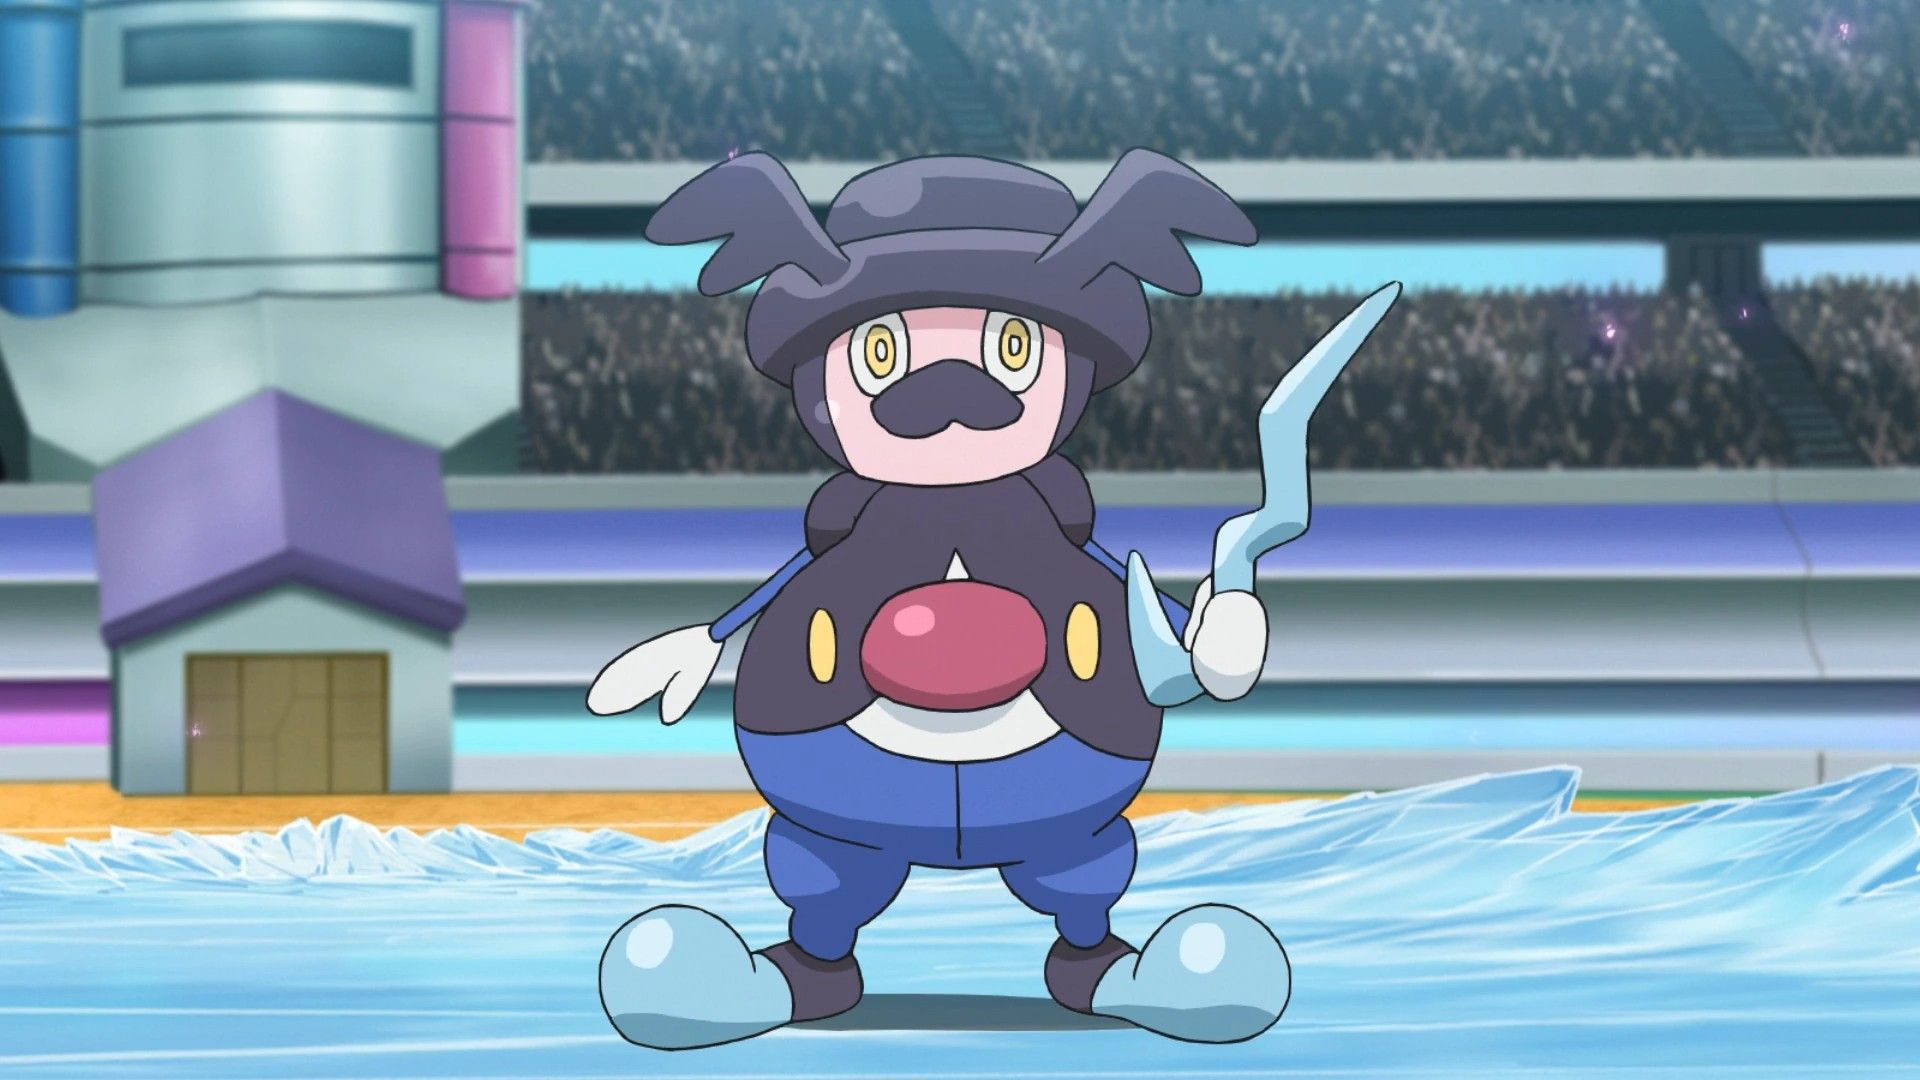 Mr. Rime parado no chão congelado em uma arena Pokémon.